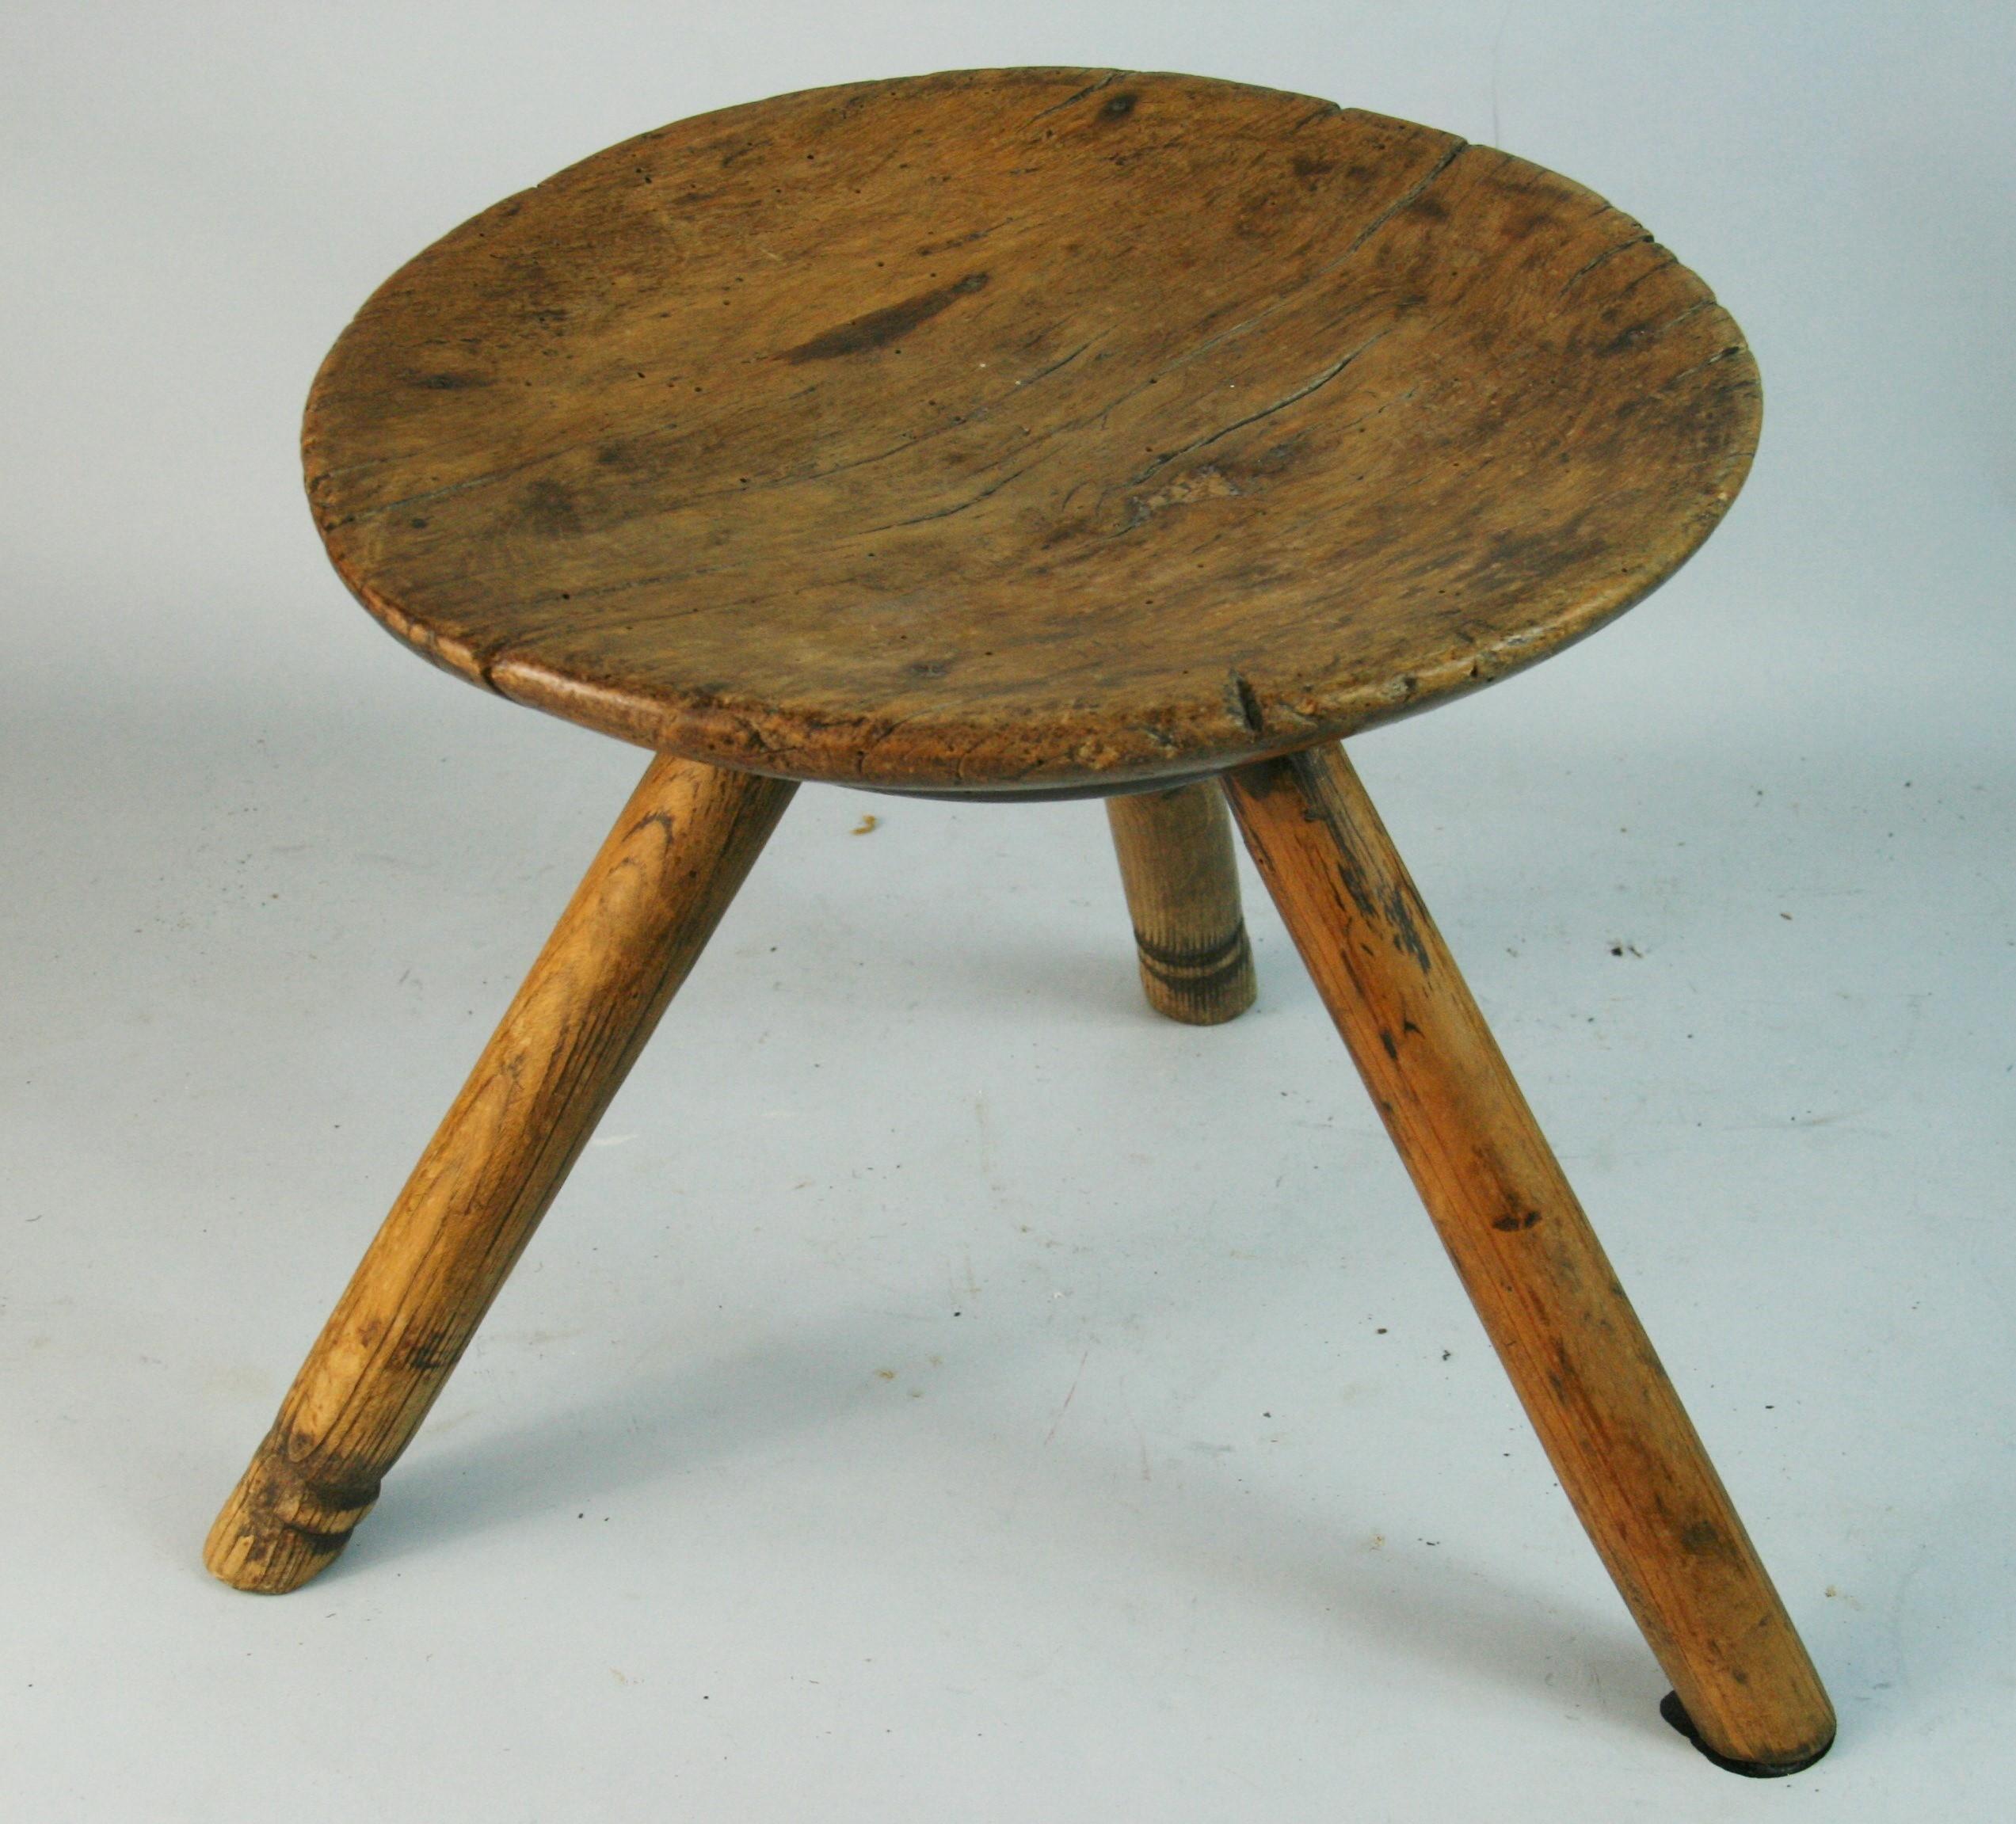 1494  Antique 19th century milking stool initialed  WD
Top diameter 11